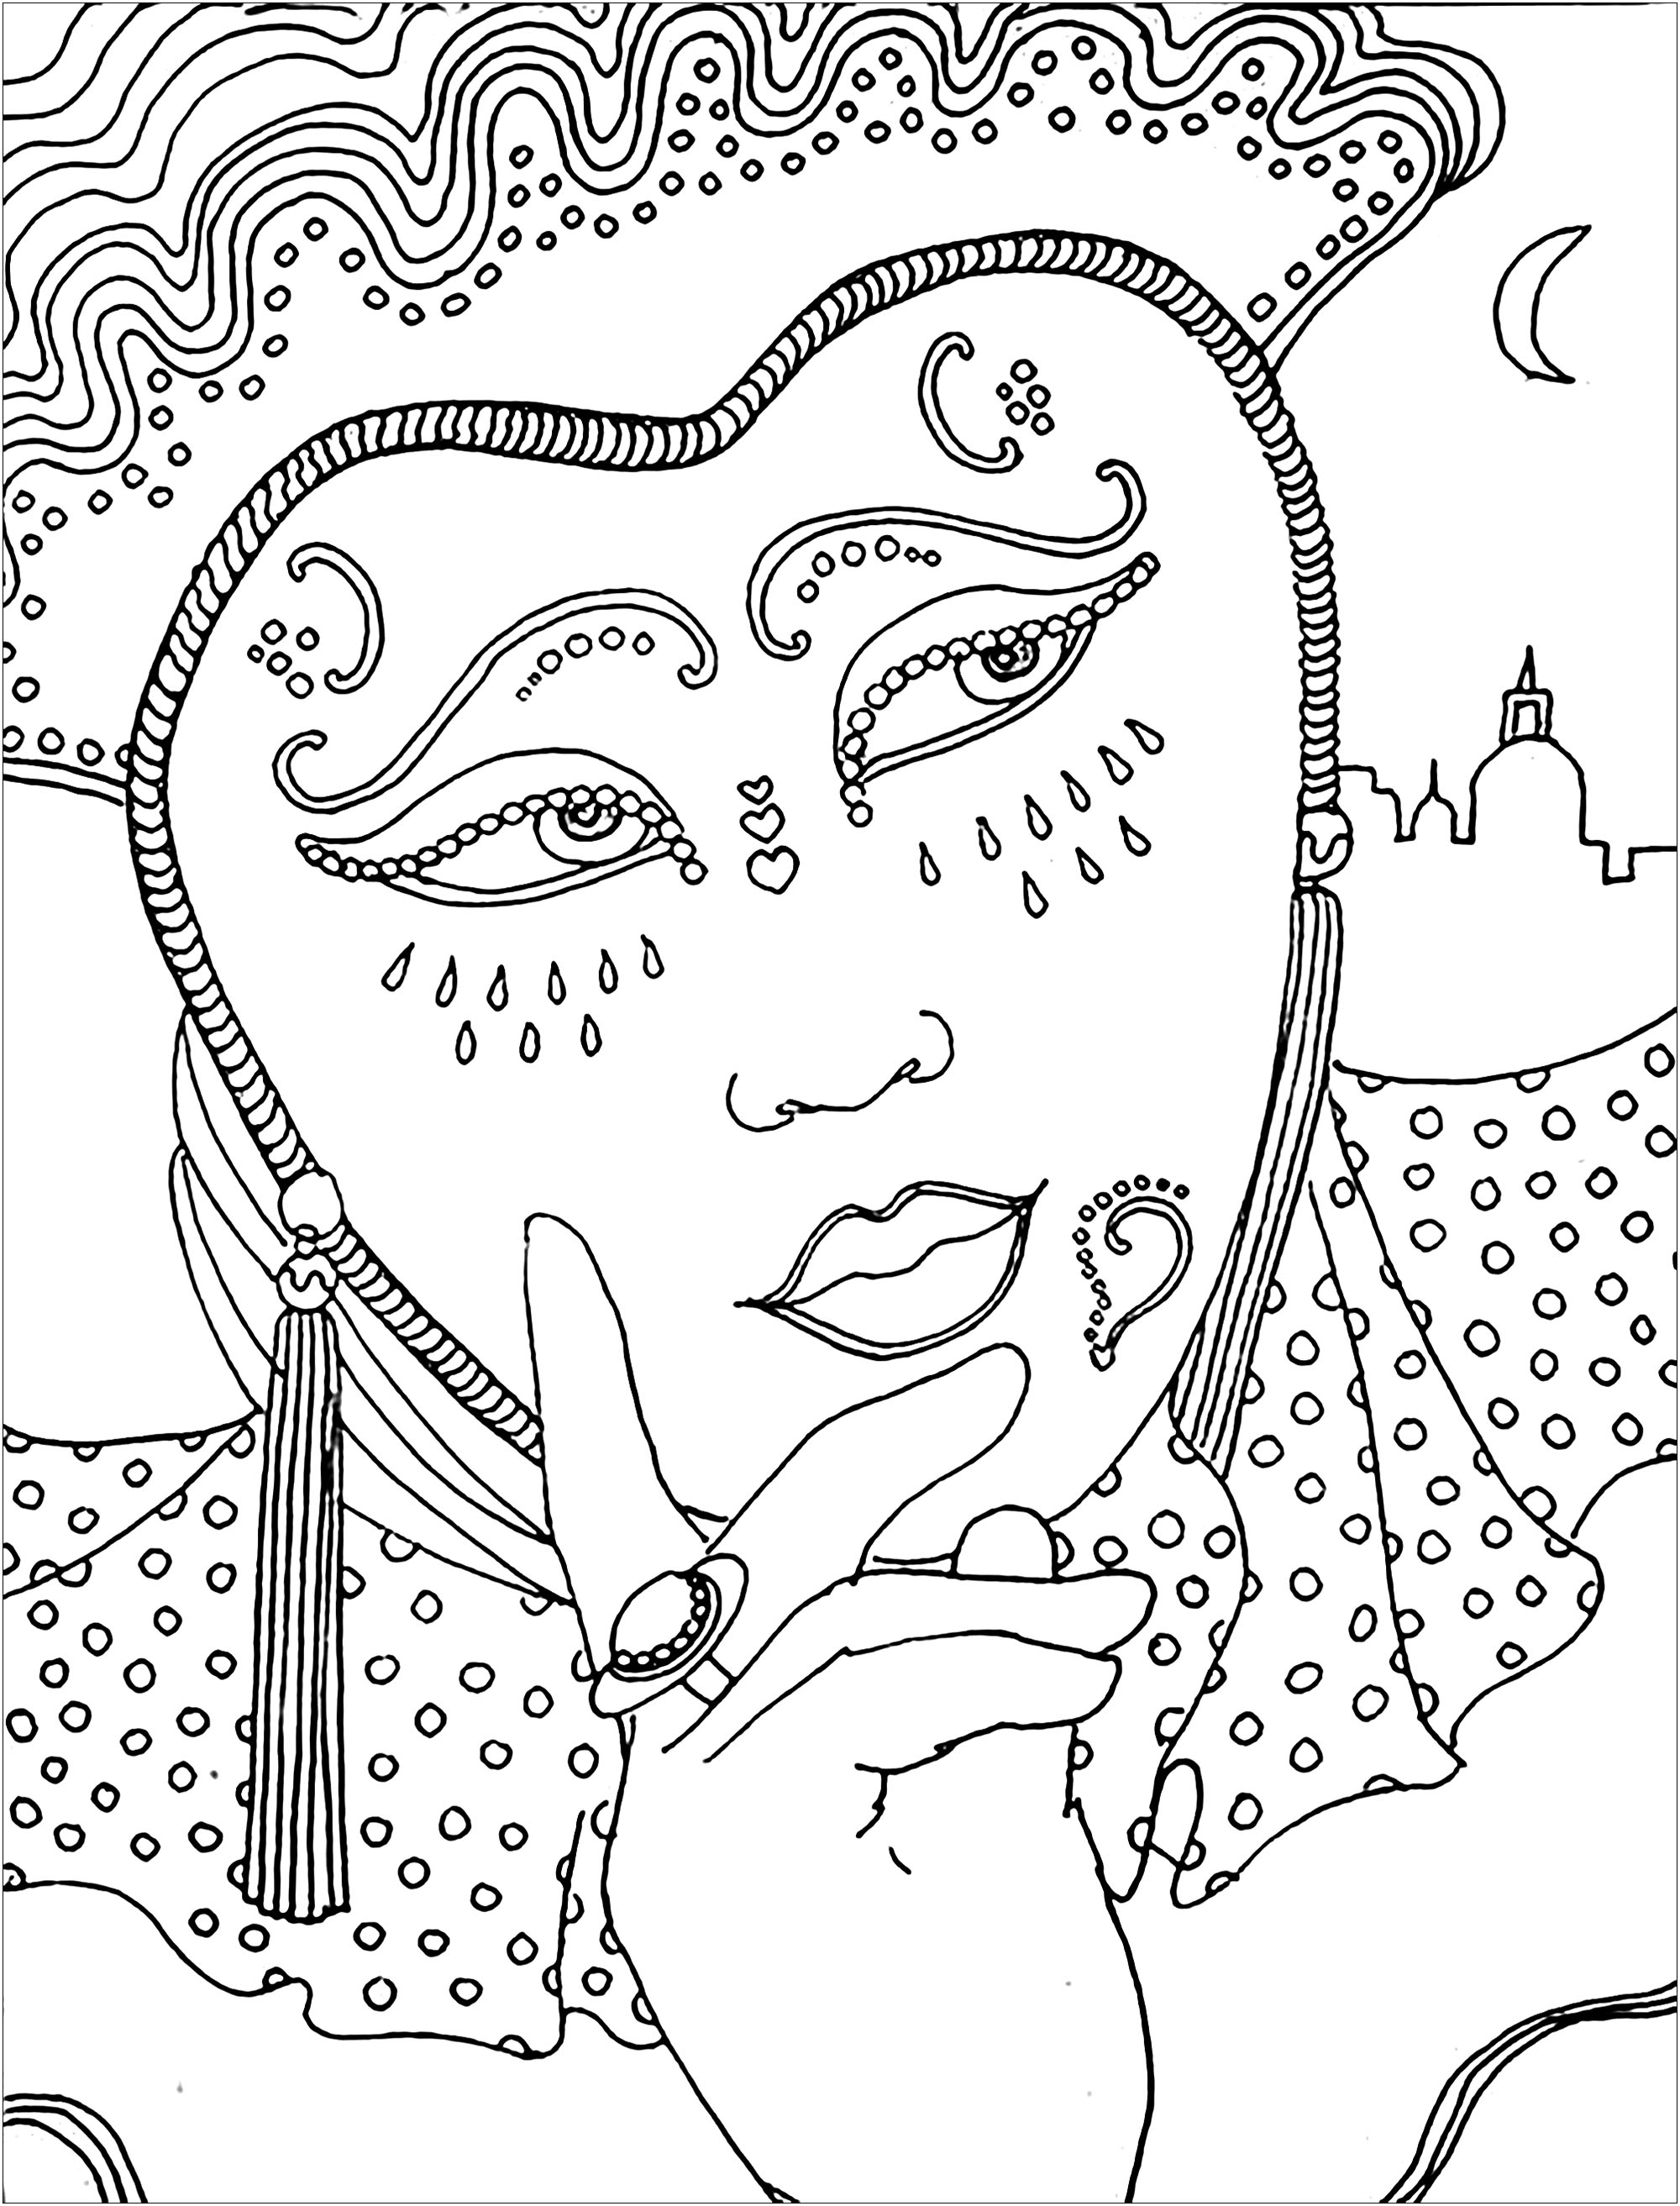 Mujer pensativa, con una hermosa máscara y vestido, durante el Carnaval, Artista : Kerozen